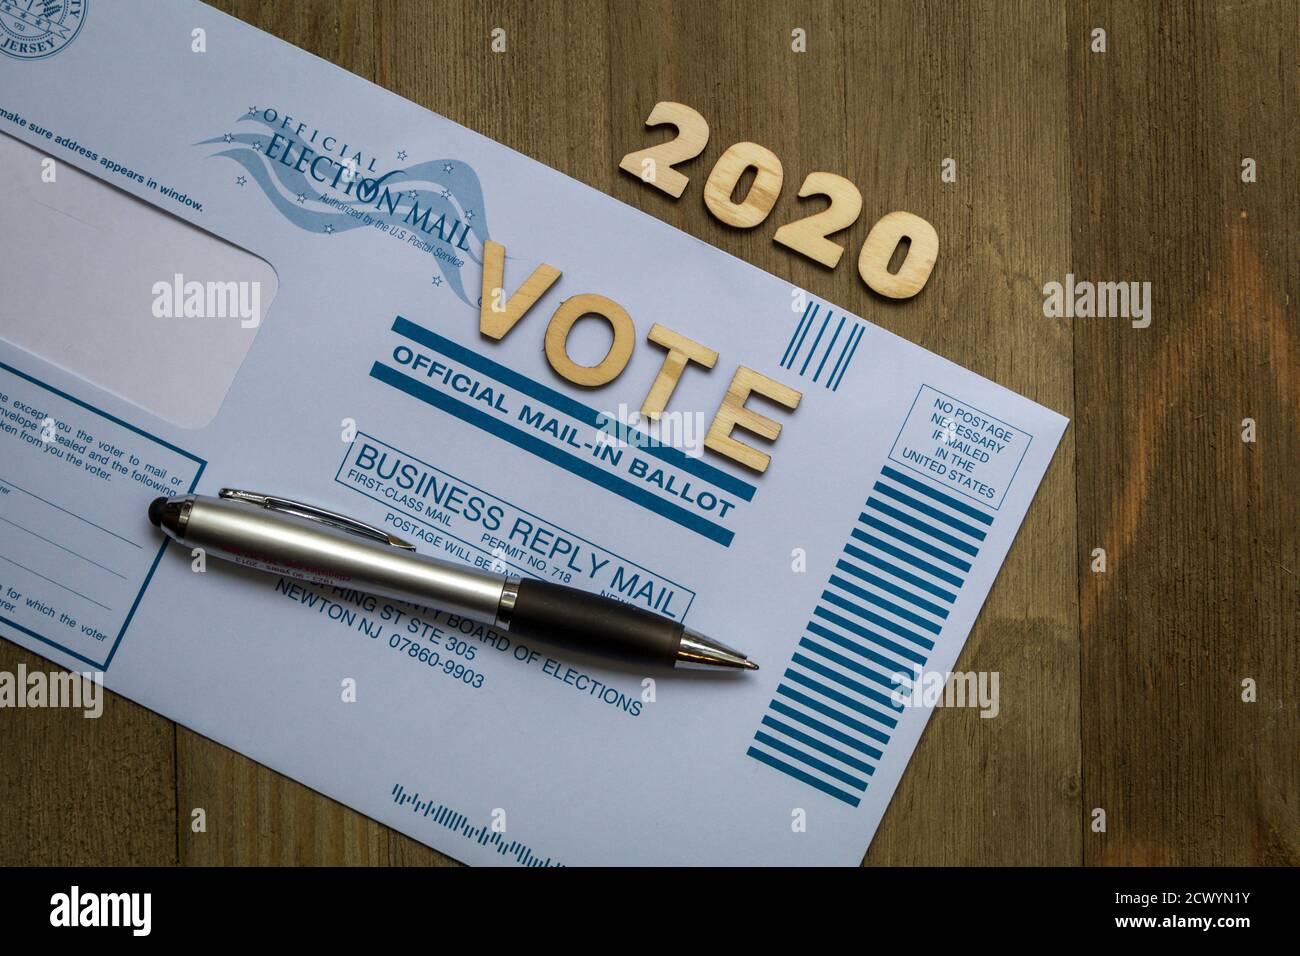 Sussex, NJ / USA - 29 de septiembre de 2020: Voto por correo para las elecciones presidenciales de los Estados Unidos y el condado de Sussex, NJ, gobierno local Foto de stock